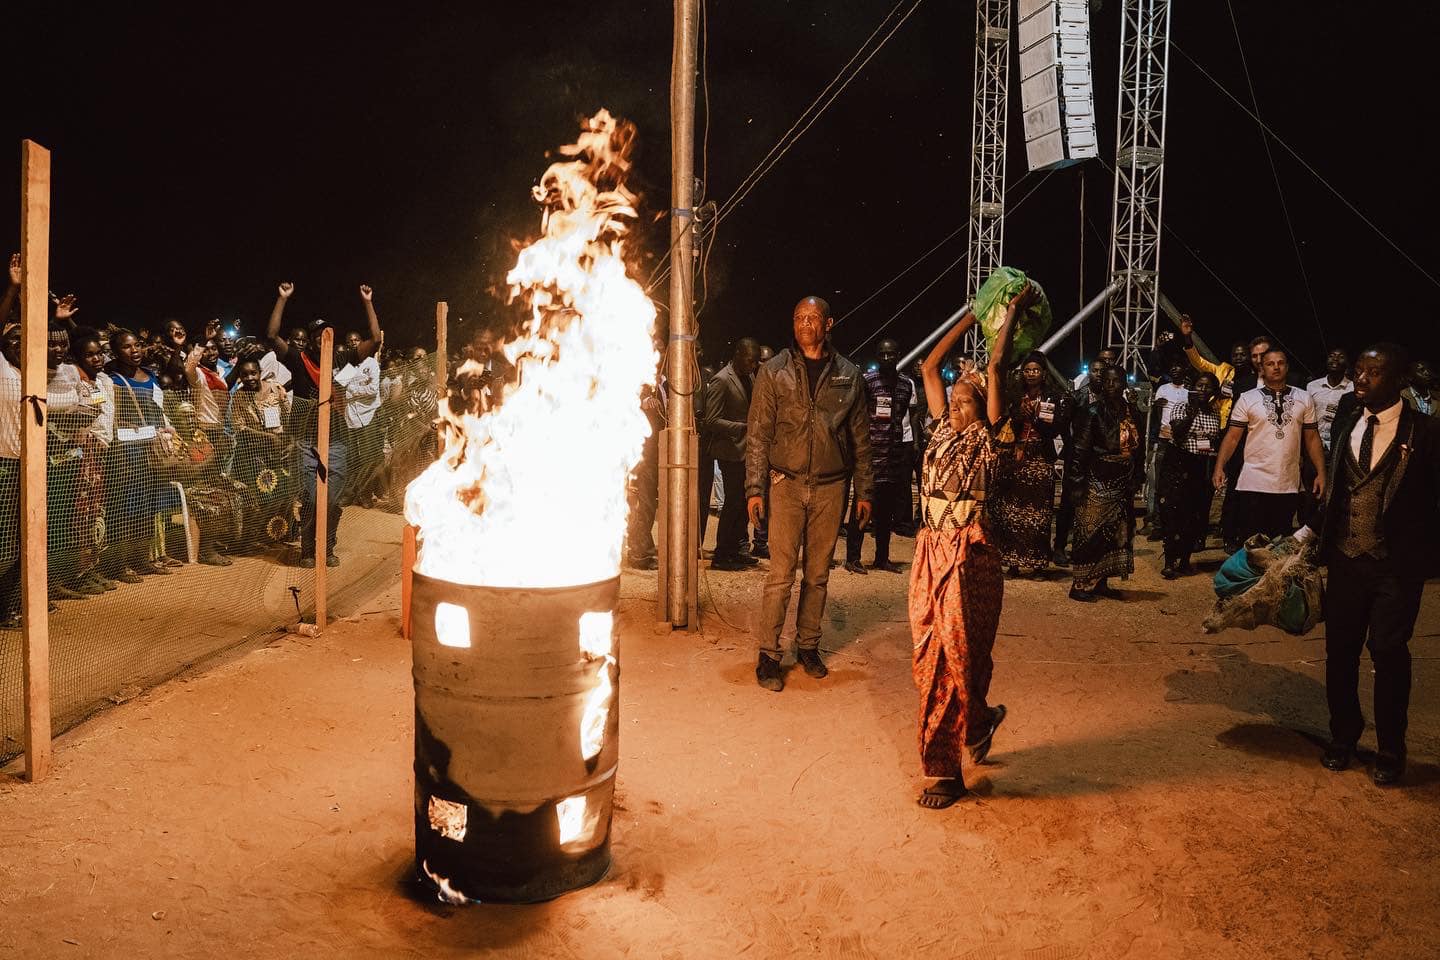 Feiticeira se rende a Jesus e queima adereços de rituais, após pregação na África